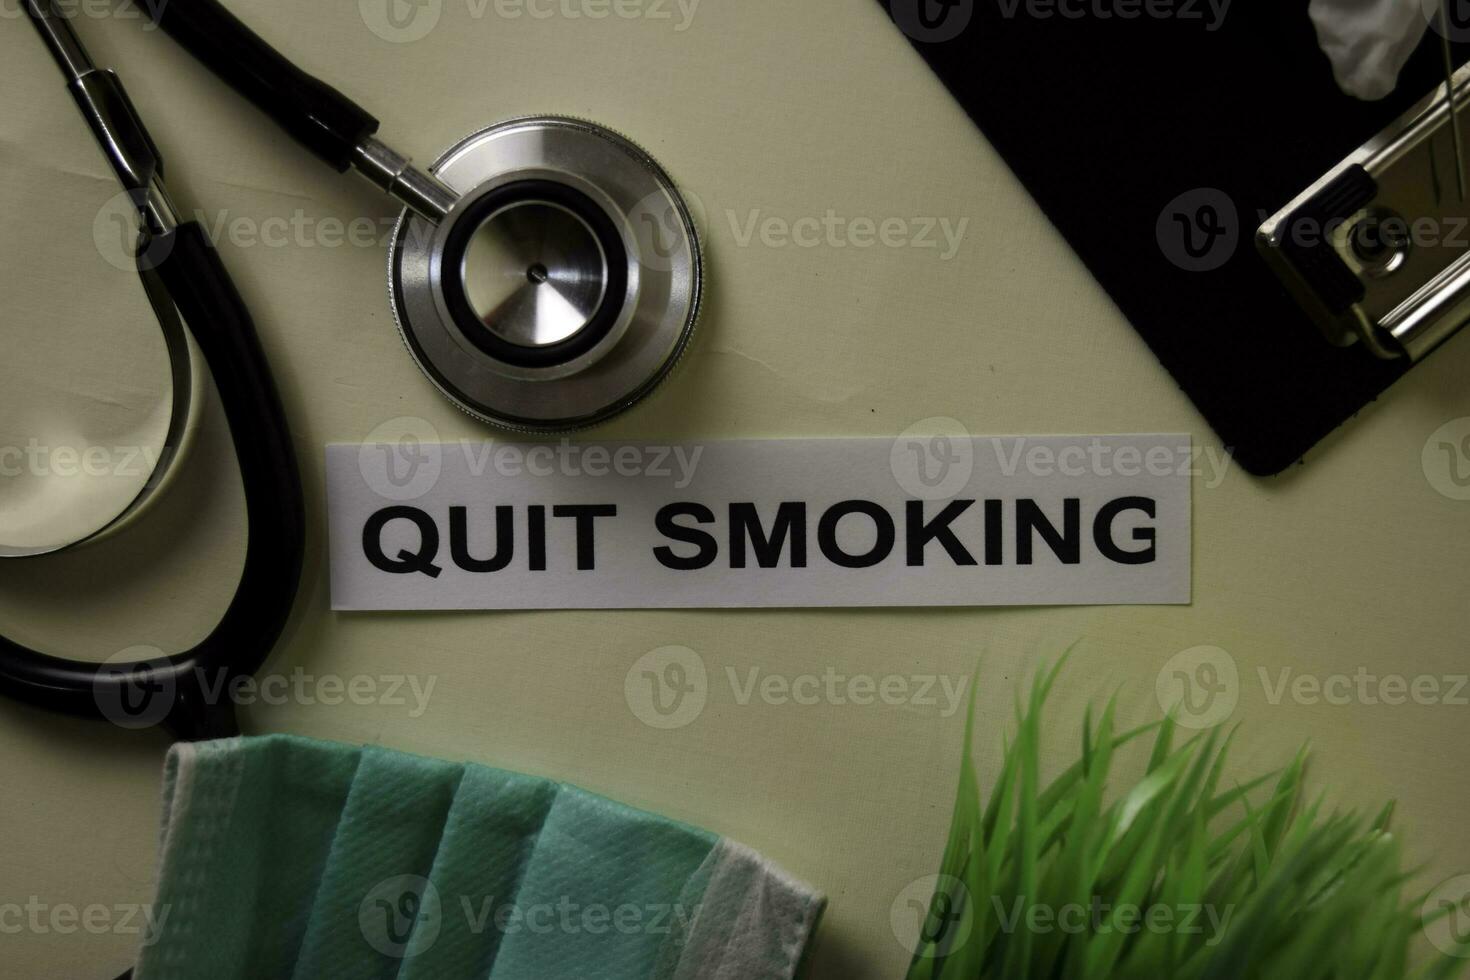 sluta rökning med inspiration och sjukvård medicinsk begrepp på skrivbord bakgrund foto